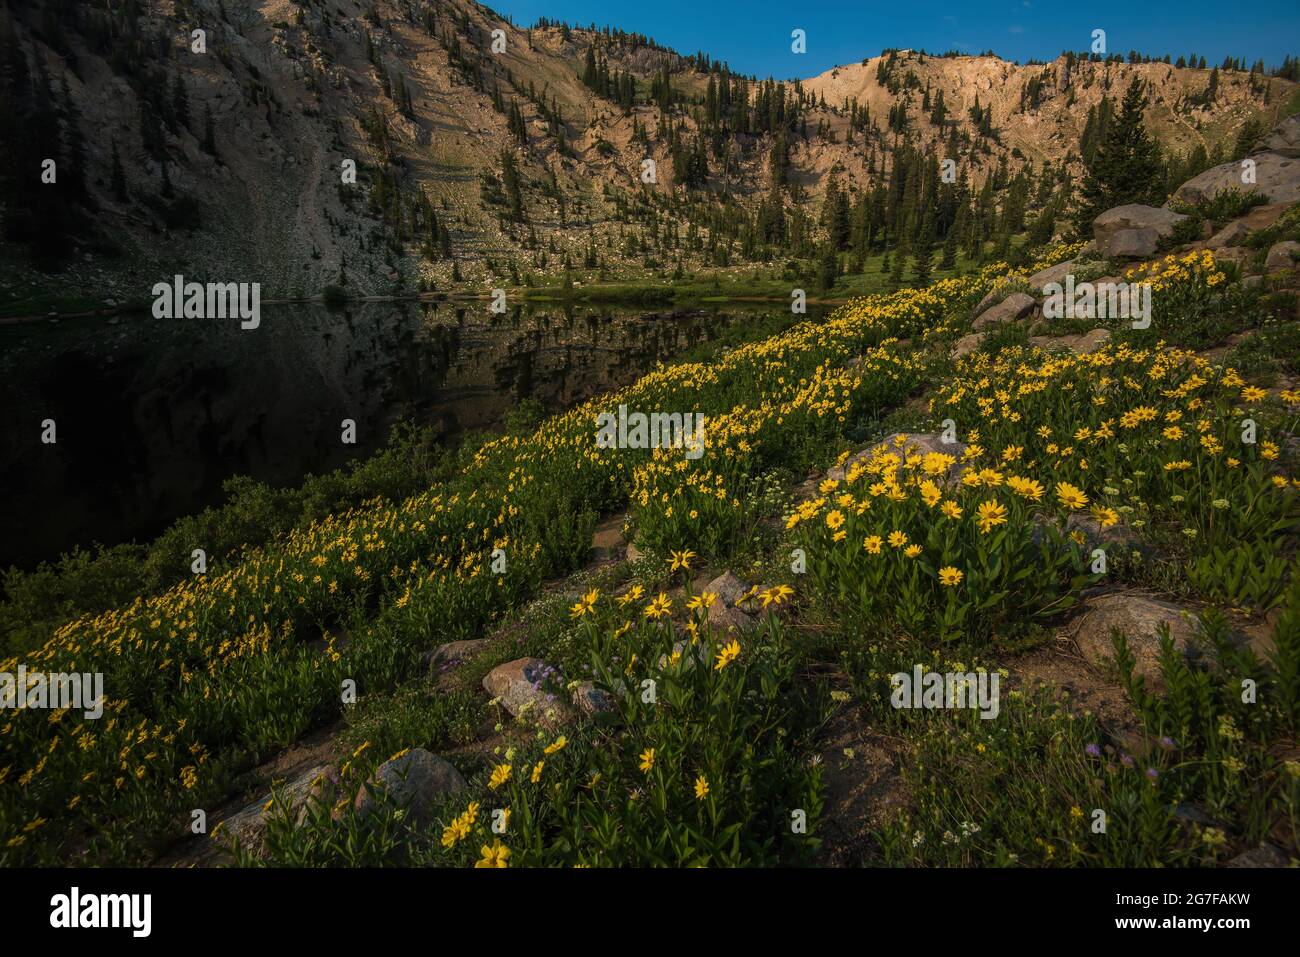 Fleurs sauvages jaunes dans un environnement de haute montagne avec un petit lac en arrière-plan, le lac Catherine est situé à 9000 pieds. (2700 m) près de Salt Lake. Banque D'Images